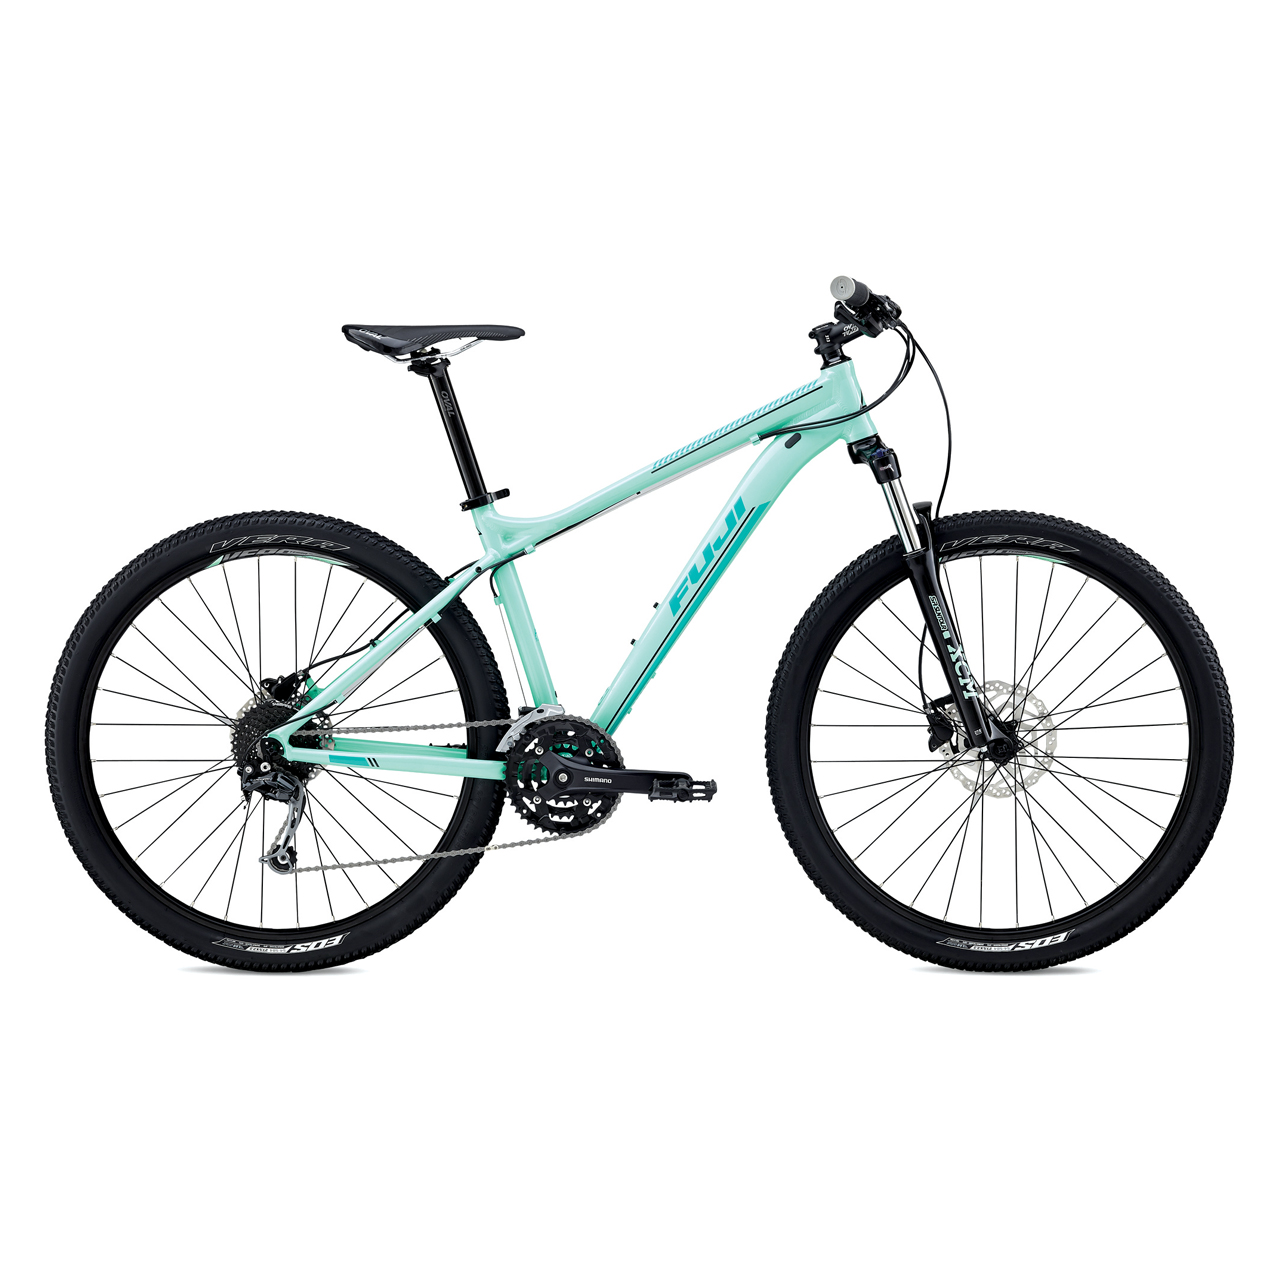 دوچرخه کوهستان بانوان فوجی Addy 1.5 سایز 27.5 رنگ سبز2018